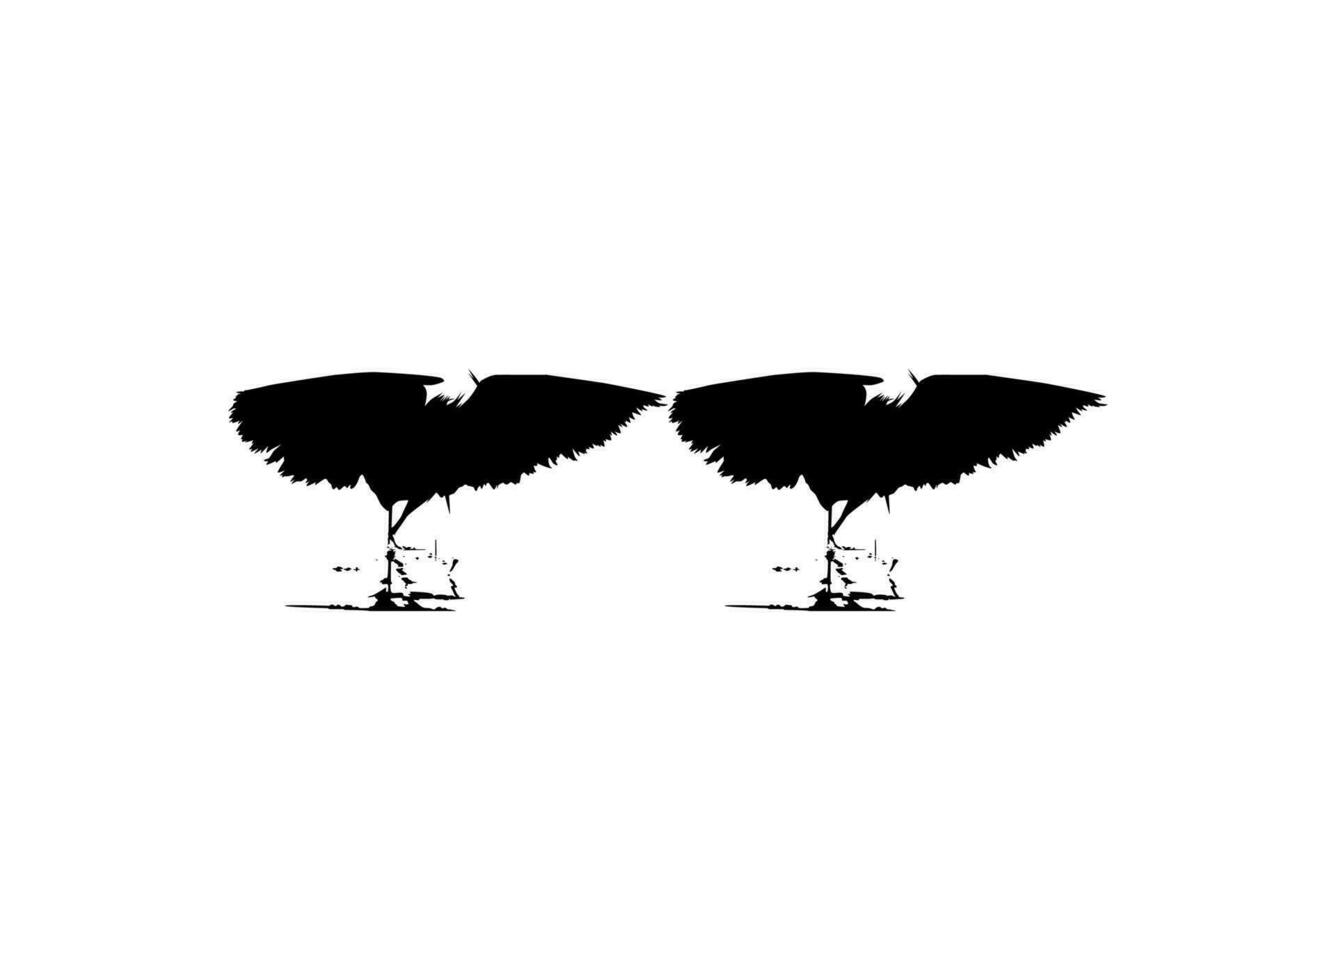 paire de le noir héron oiseau, egretta ardesiaca, aussi connu comme le noir aigrette silhouette pour art illustration, logo, pictogramme, site Internet, ou graphique conception élément. vecteur illustration